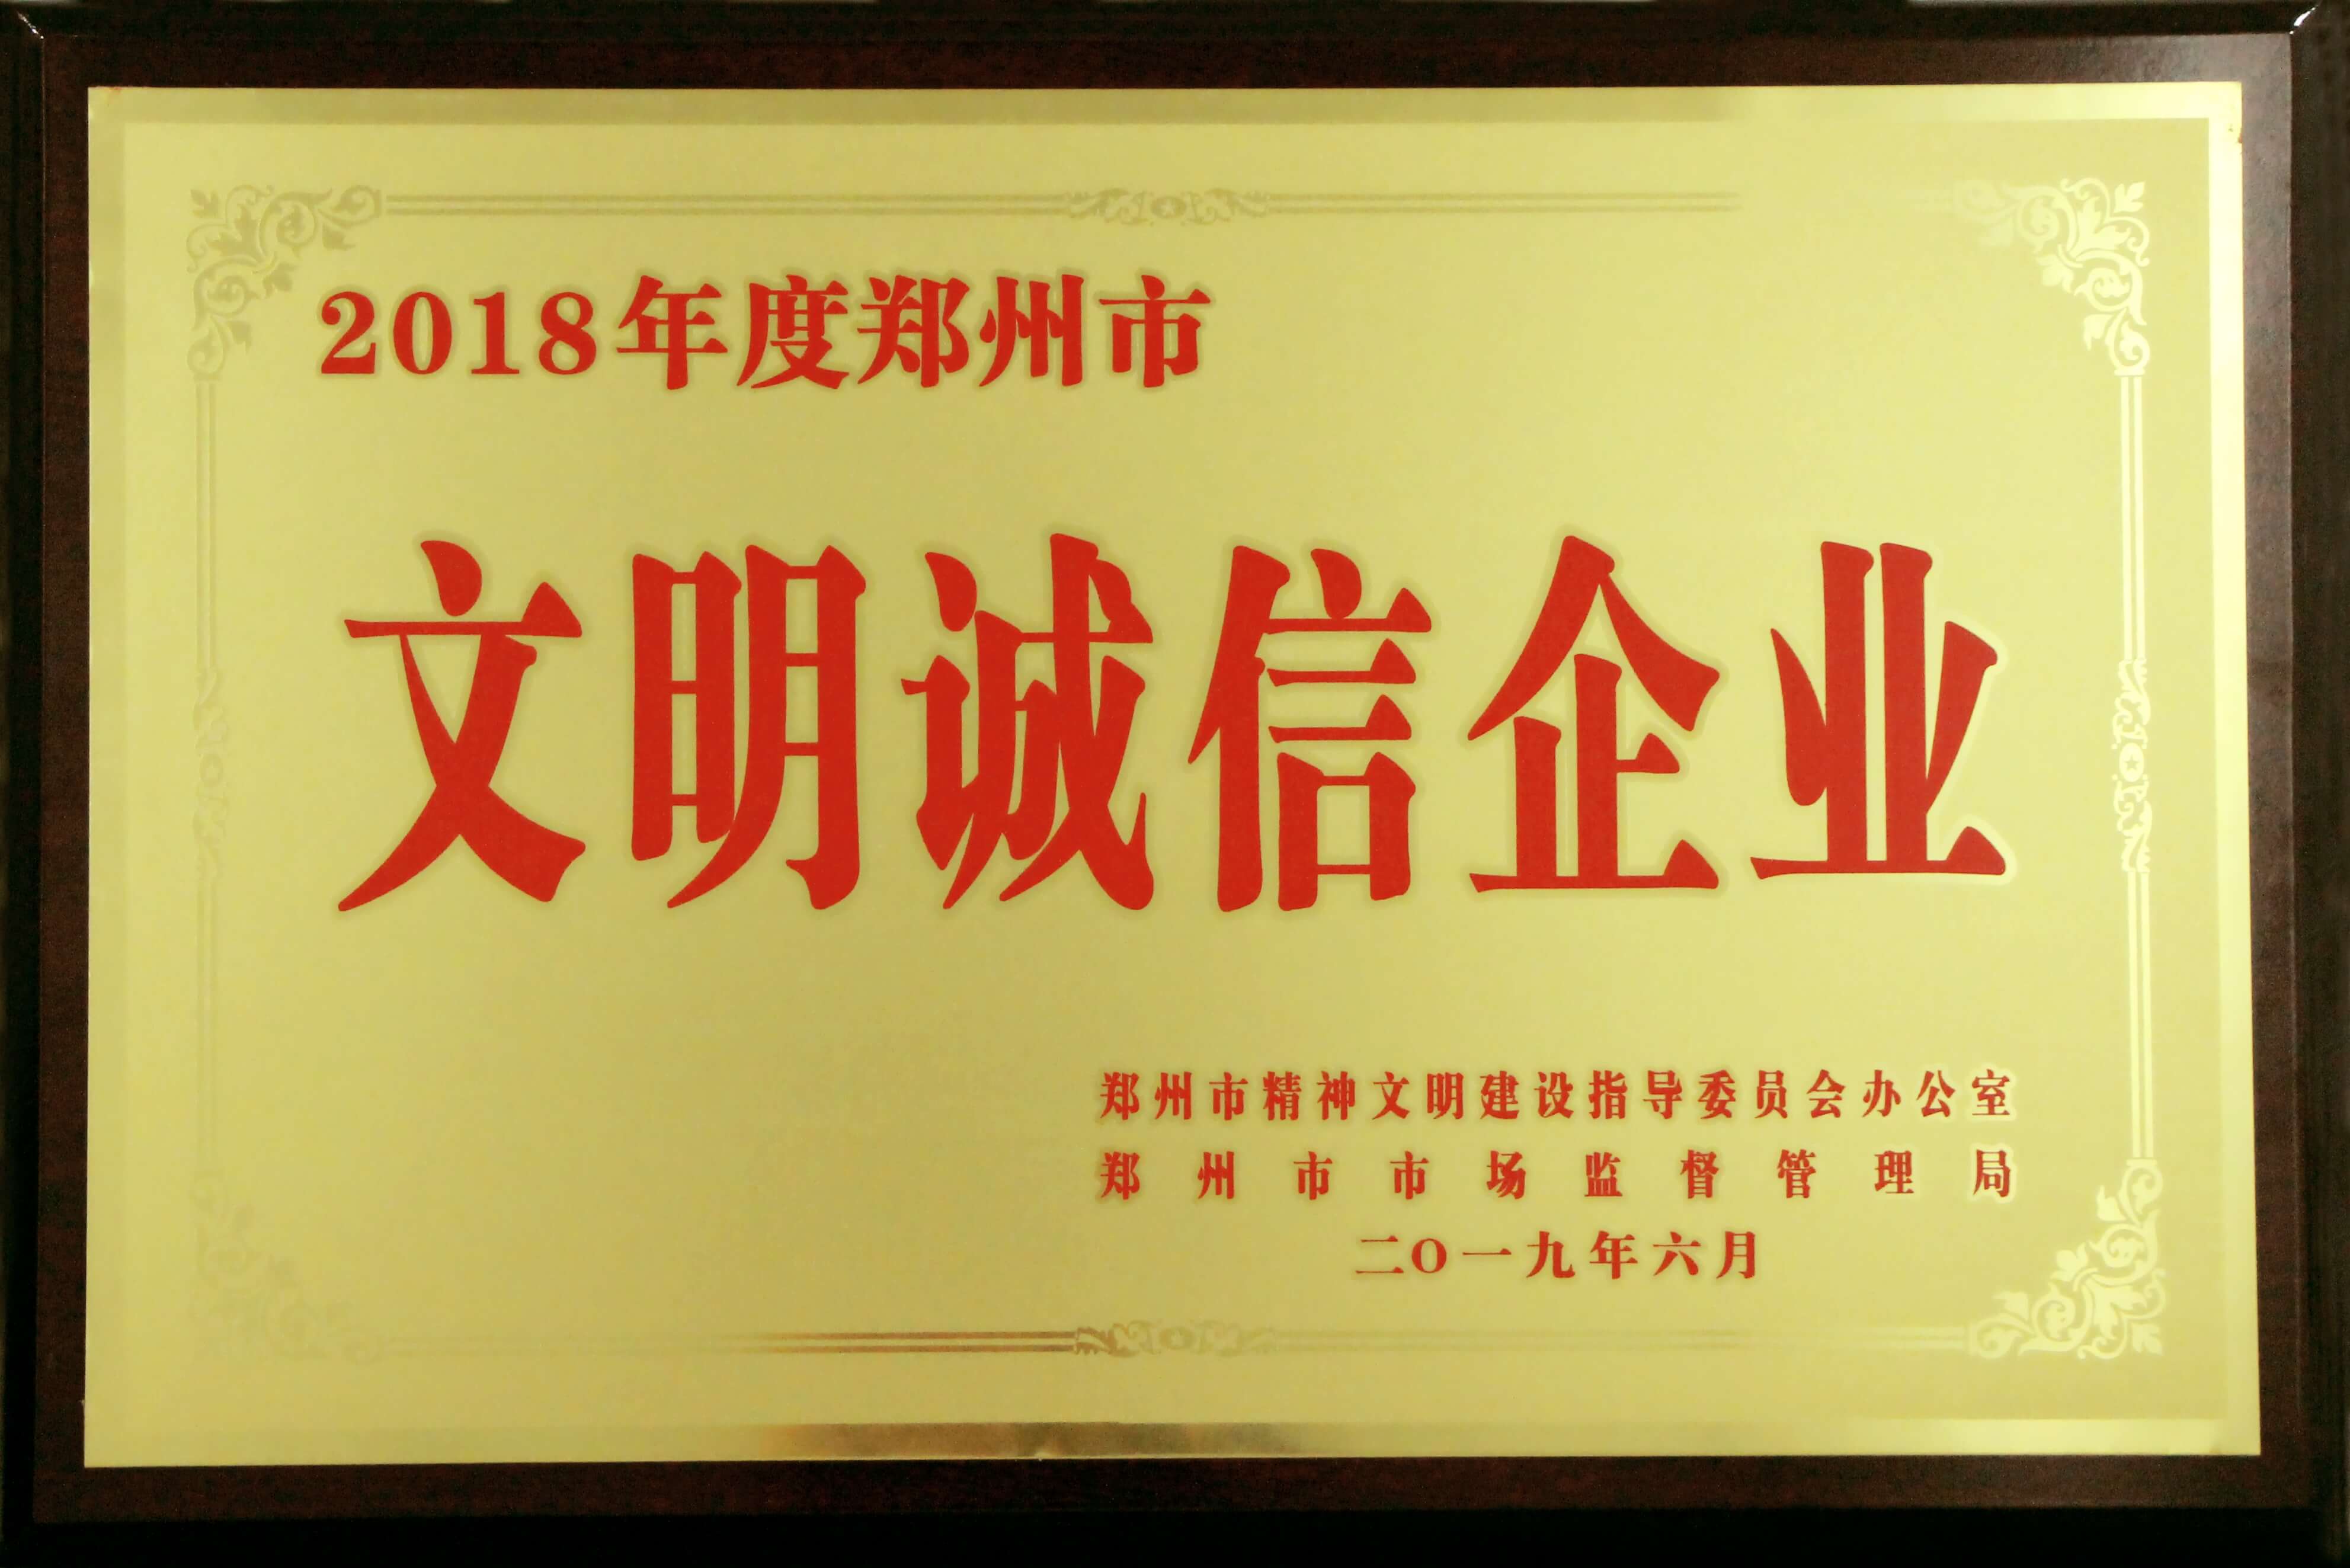 美林通荣获“2018年度郑州市文明诚信企业”称号